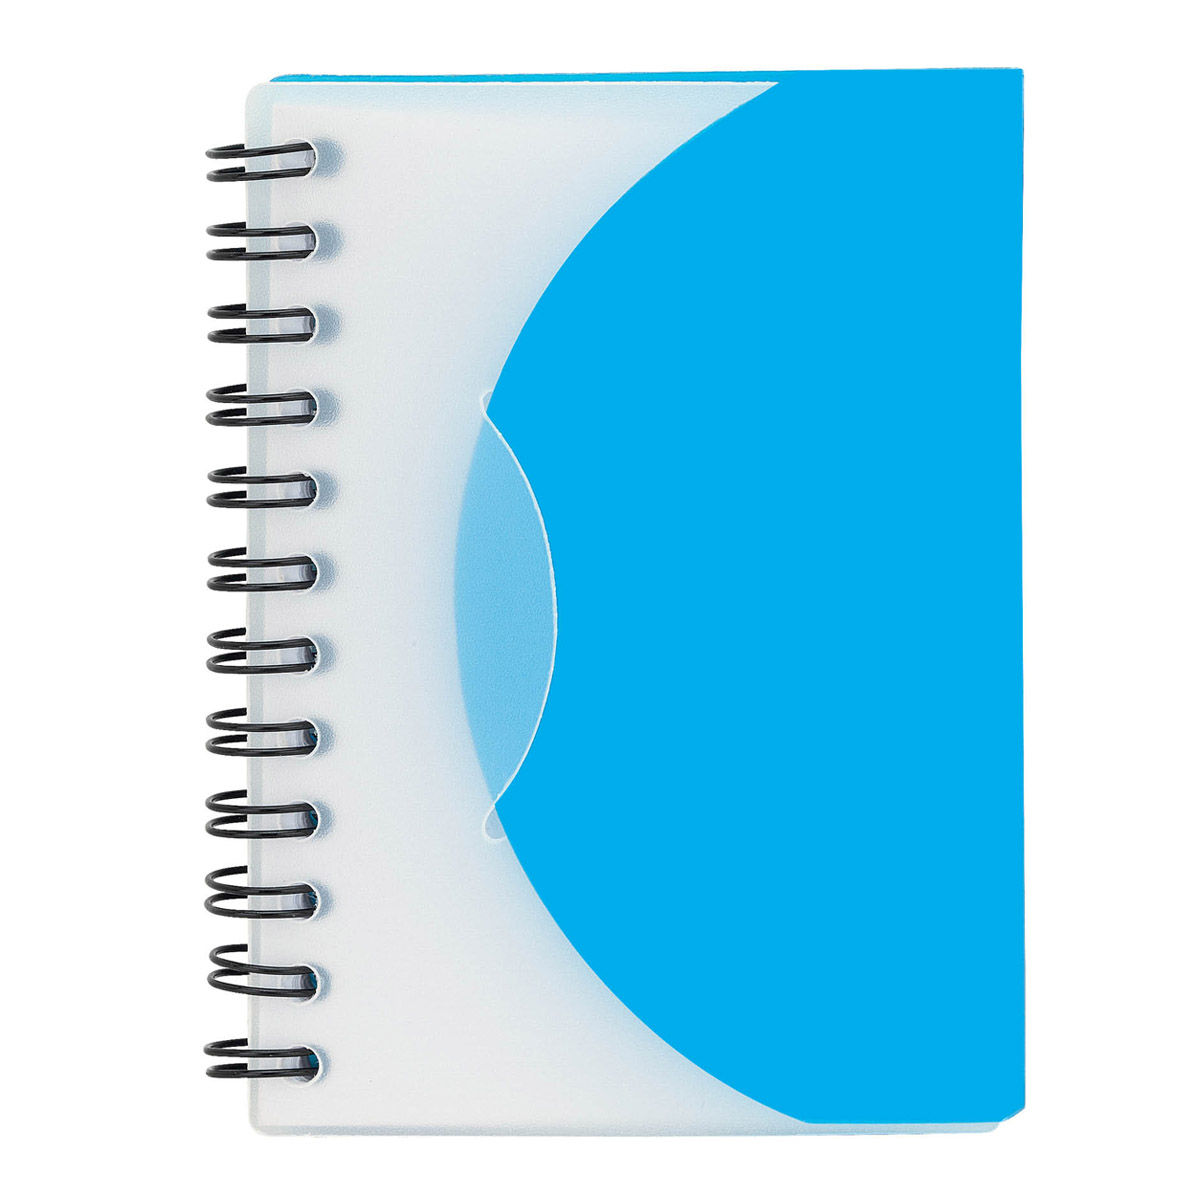 Black Mini Spiral Notebook